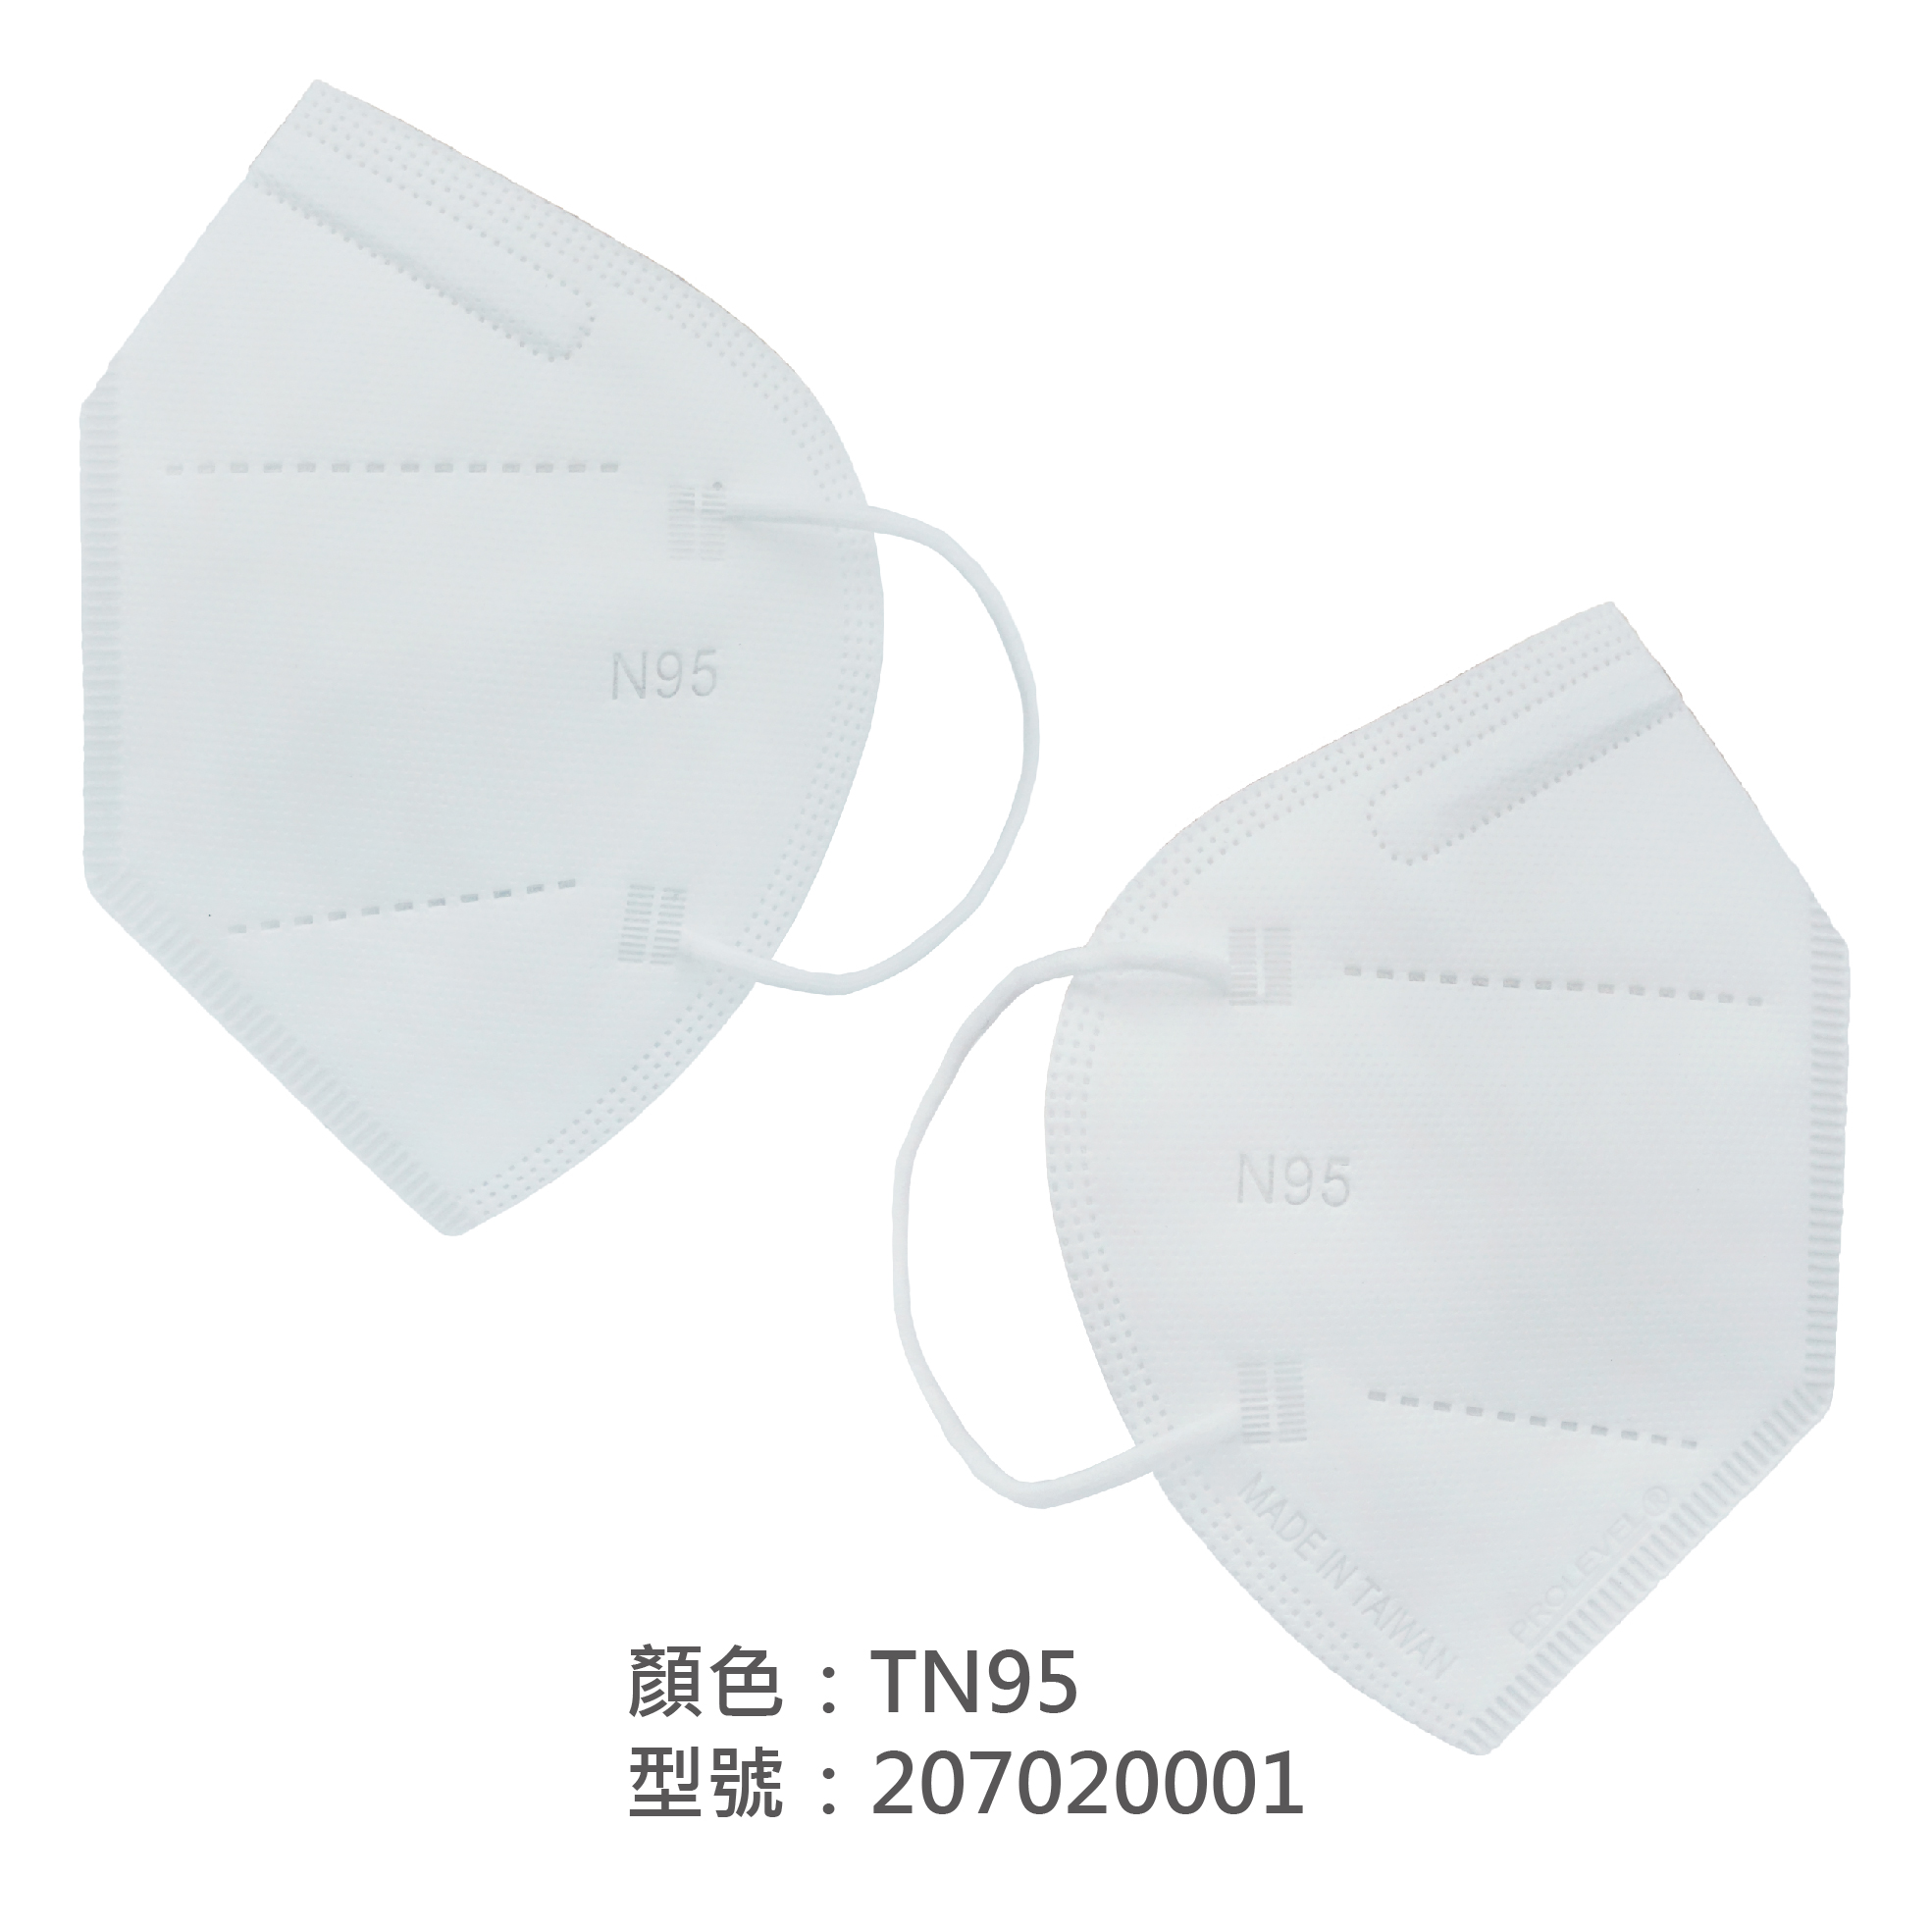 TN95口罩(專業防護口罩) 207020001|TN95口罩/TN95防護口罩系列